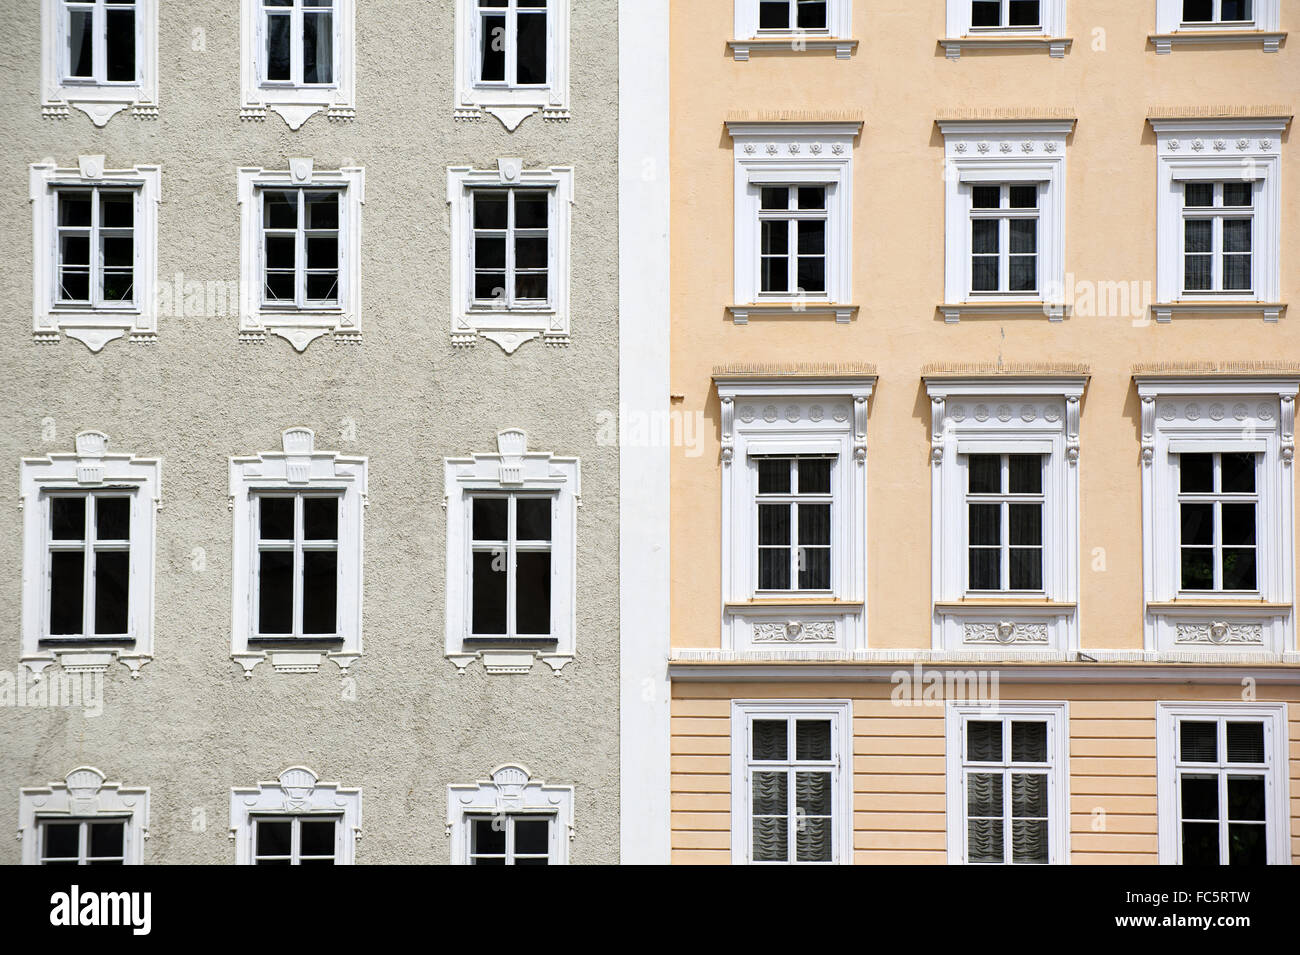 Facade view in Salzburg Stock Photo